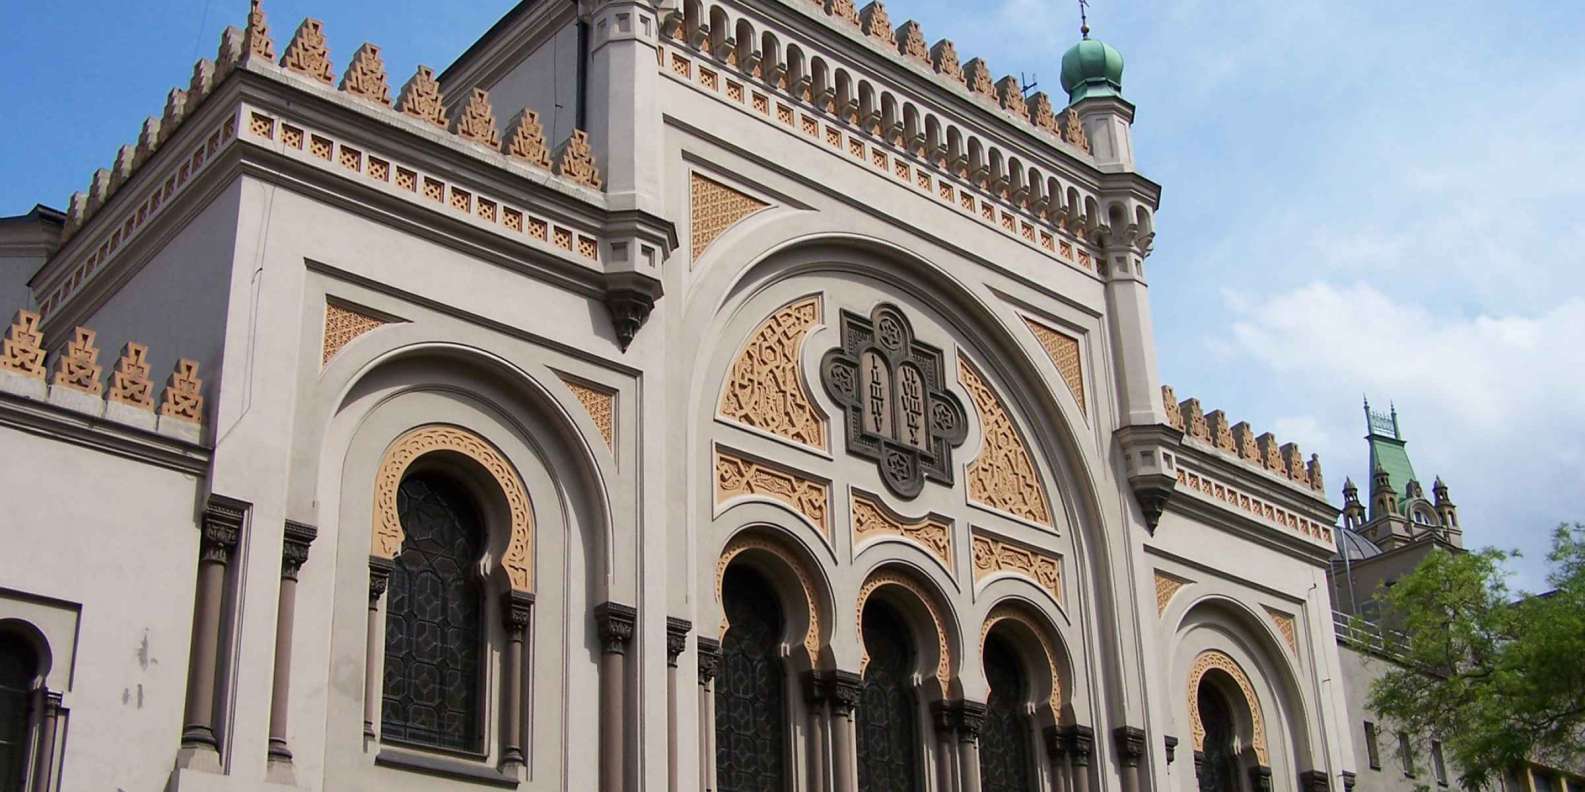 AS SINAGOGAS EM SÃO PAULO - ARTE E ARQUITETURA JUDAICA: A Sinagoga